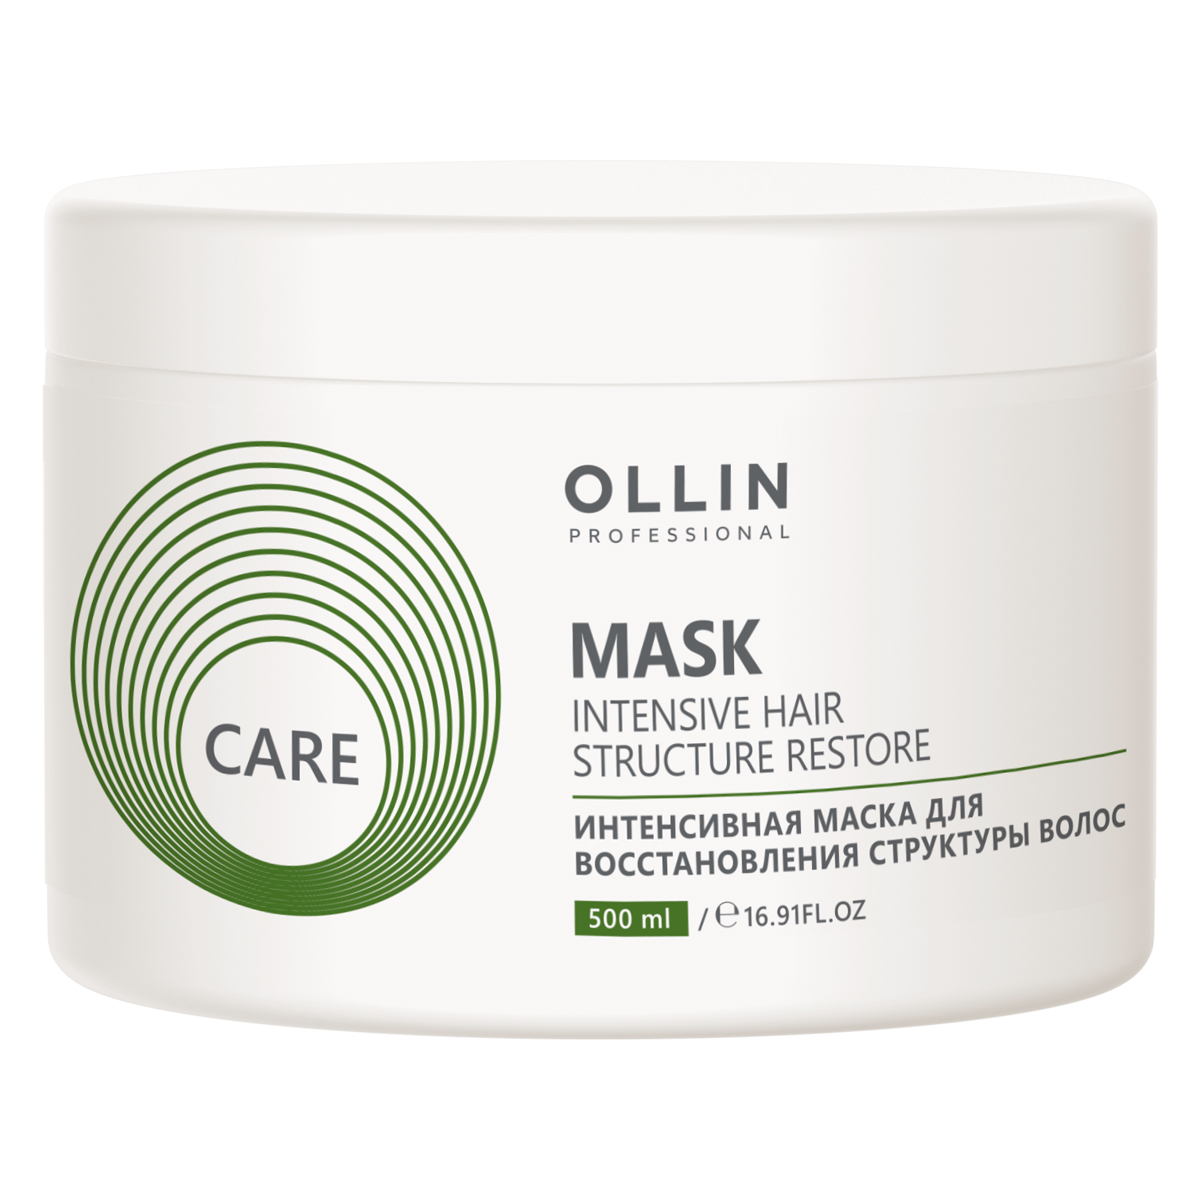 цена Ollin Professional Интенсивная маска для восстановления структуры волос, 500 мл (Ollin Professional, Care)